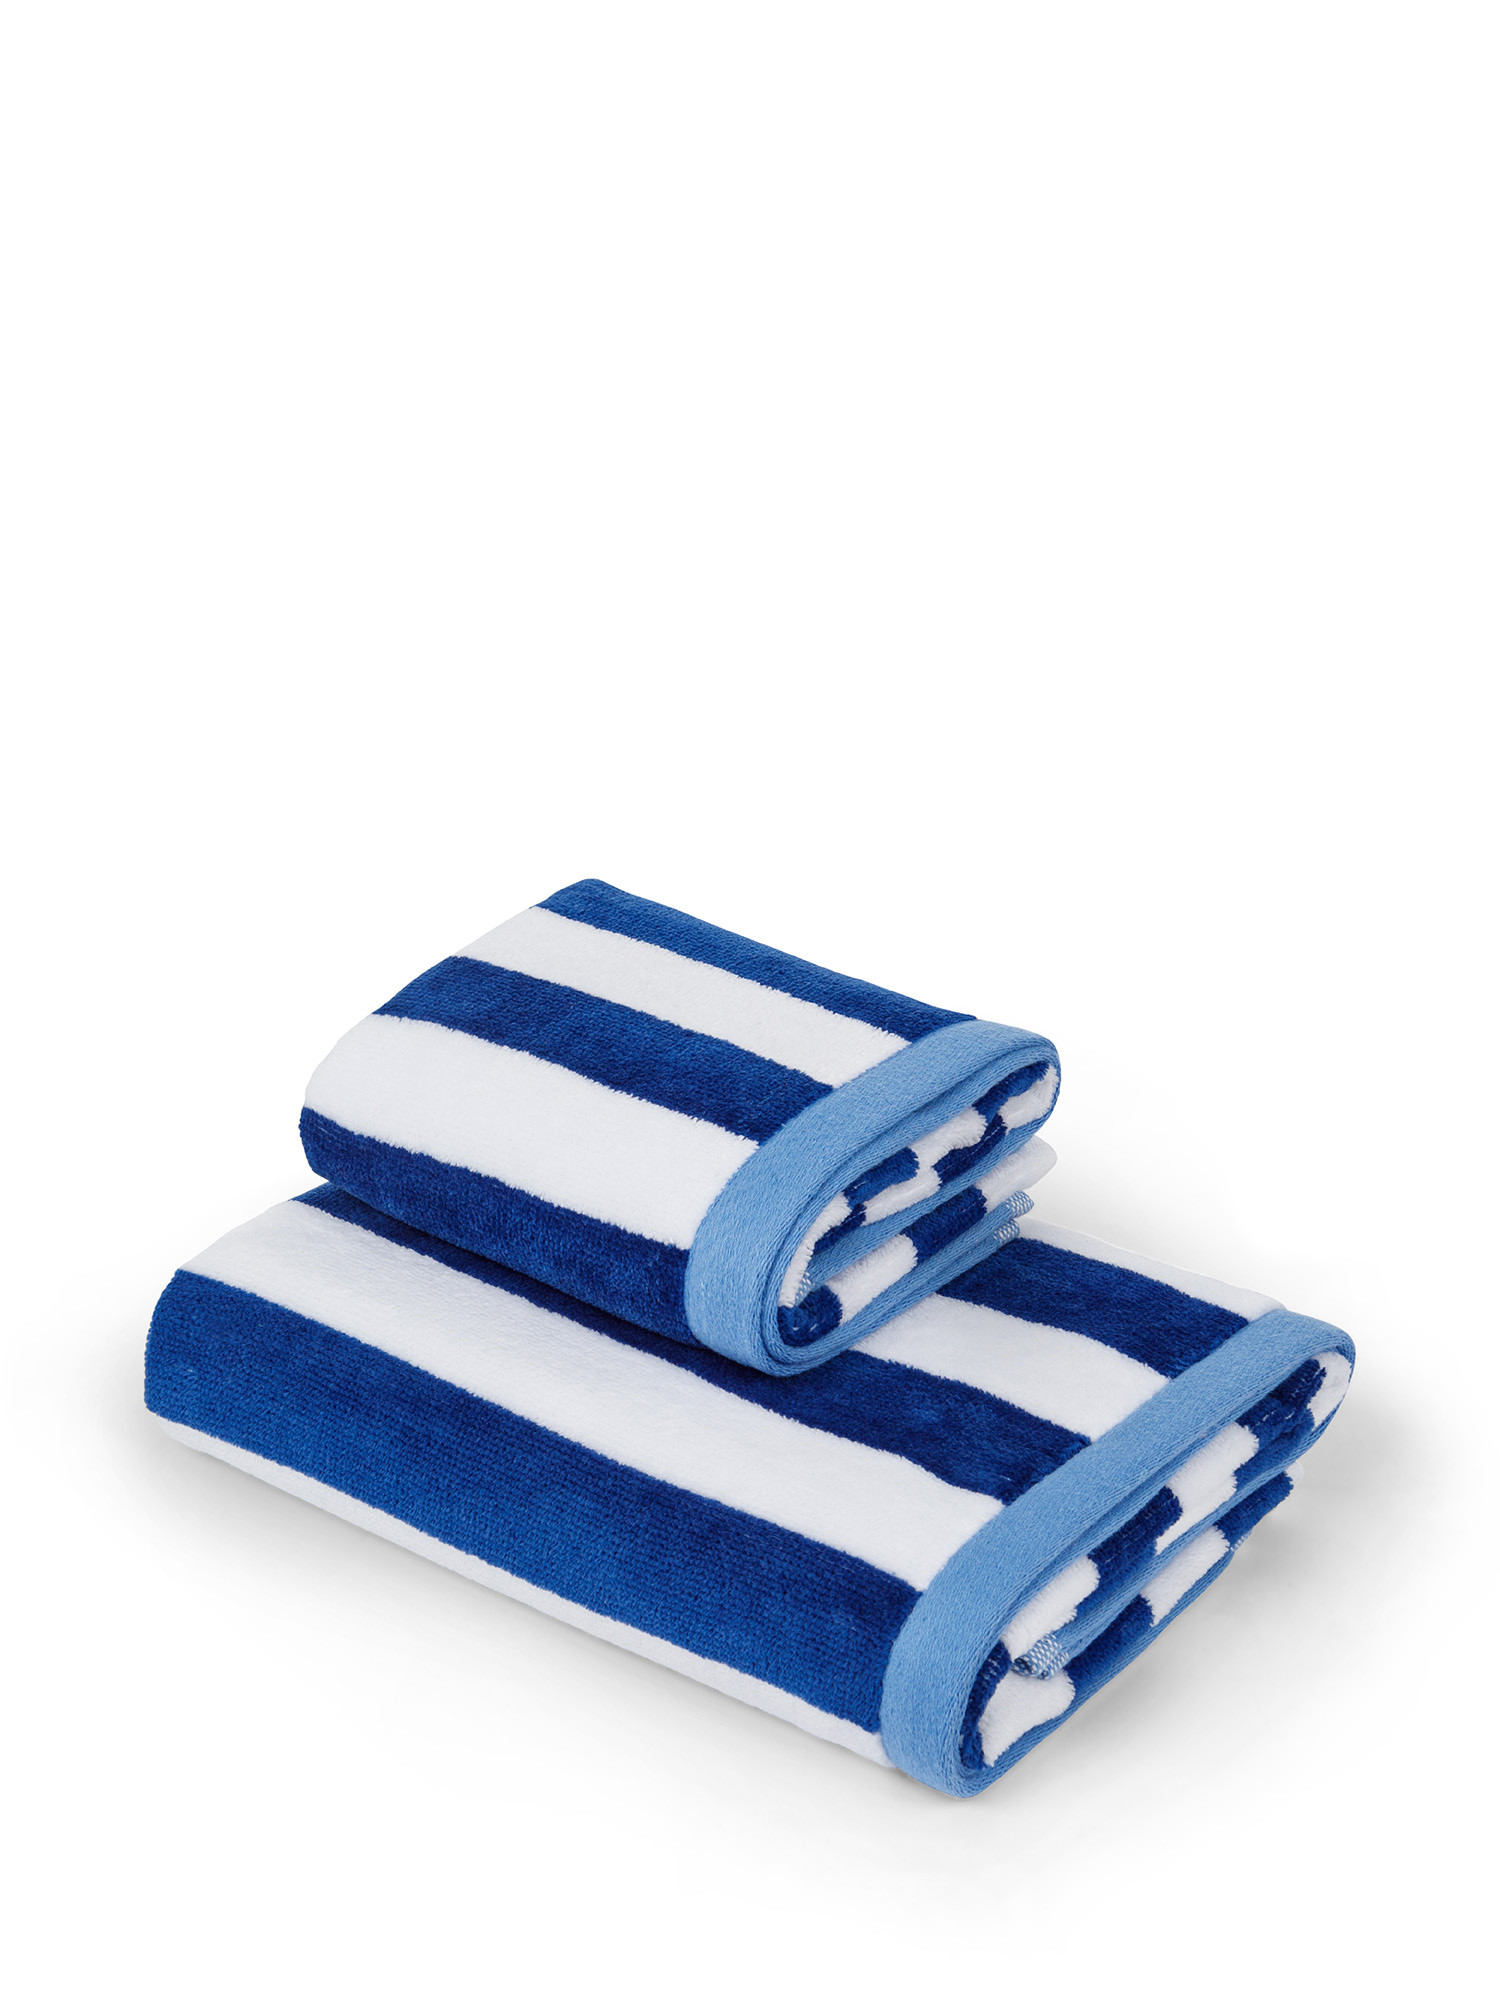 Velor cotton towel with sailor stripes motif, Blue, large image number 0